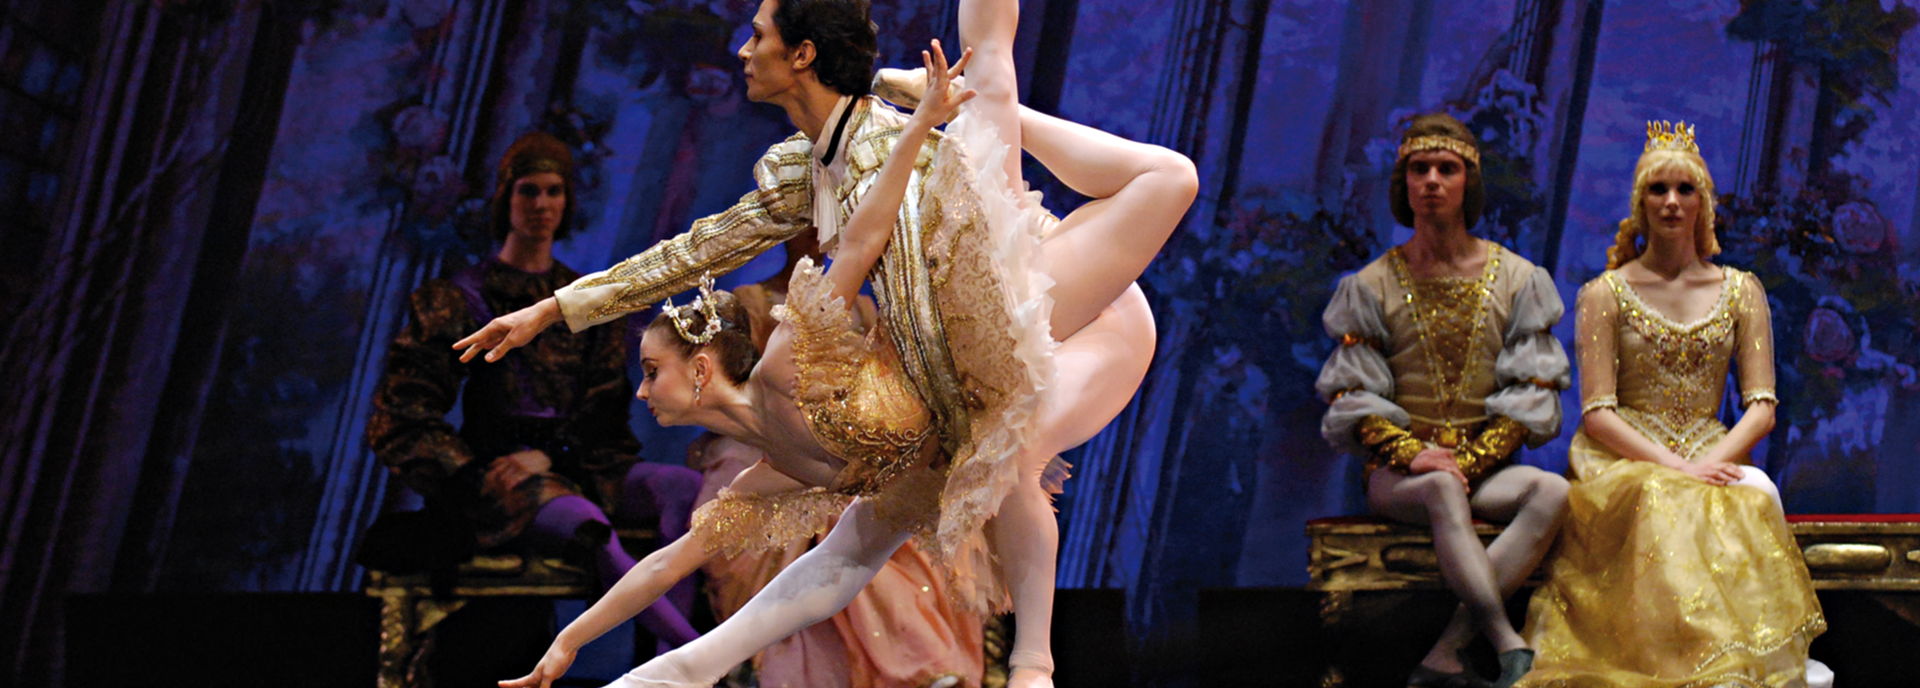 De Staatsopera van Tatarstan betovert jong en oud met het magische sprookjesballet Sleeping Beauty, met muziek van Tsjaikovski en de virtuoze choreografie van Pepita. Een must-see voor balletliefhebbers.